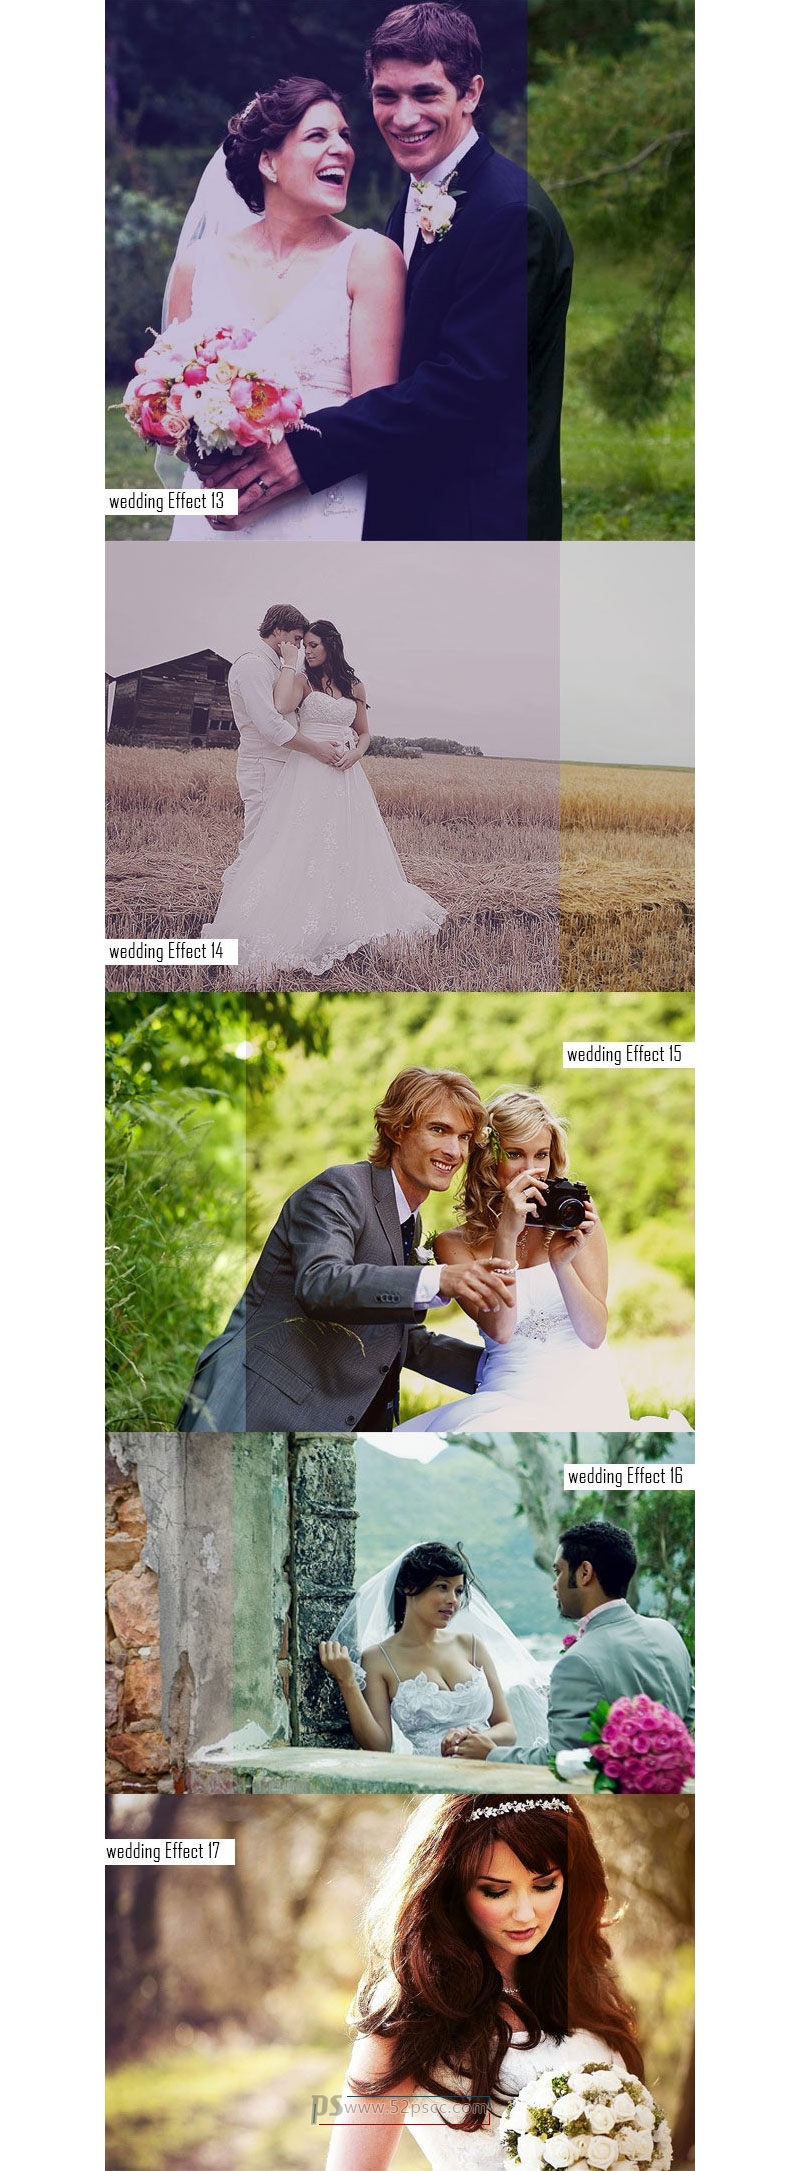 20组婚礼照片HDR效果动作HDR照片效果Photoshop修饰动作